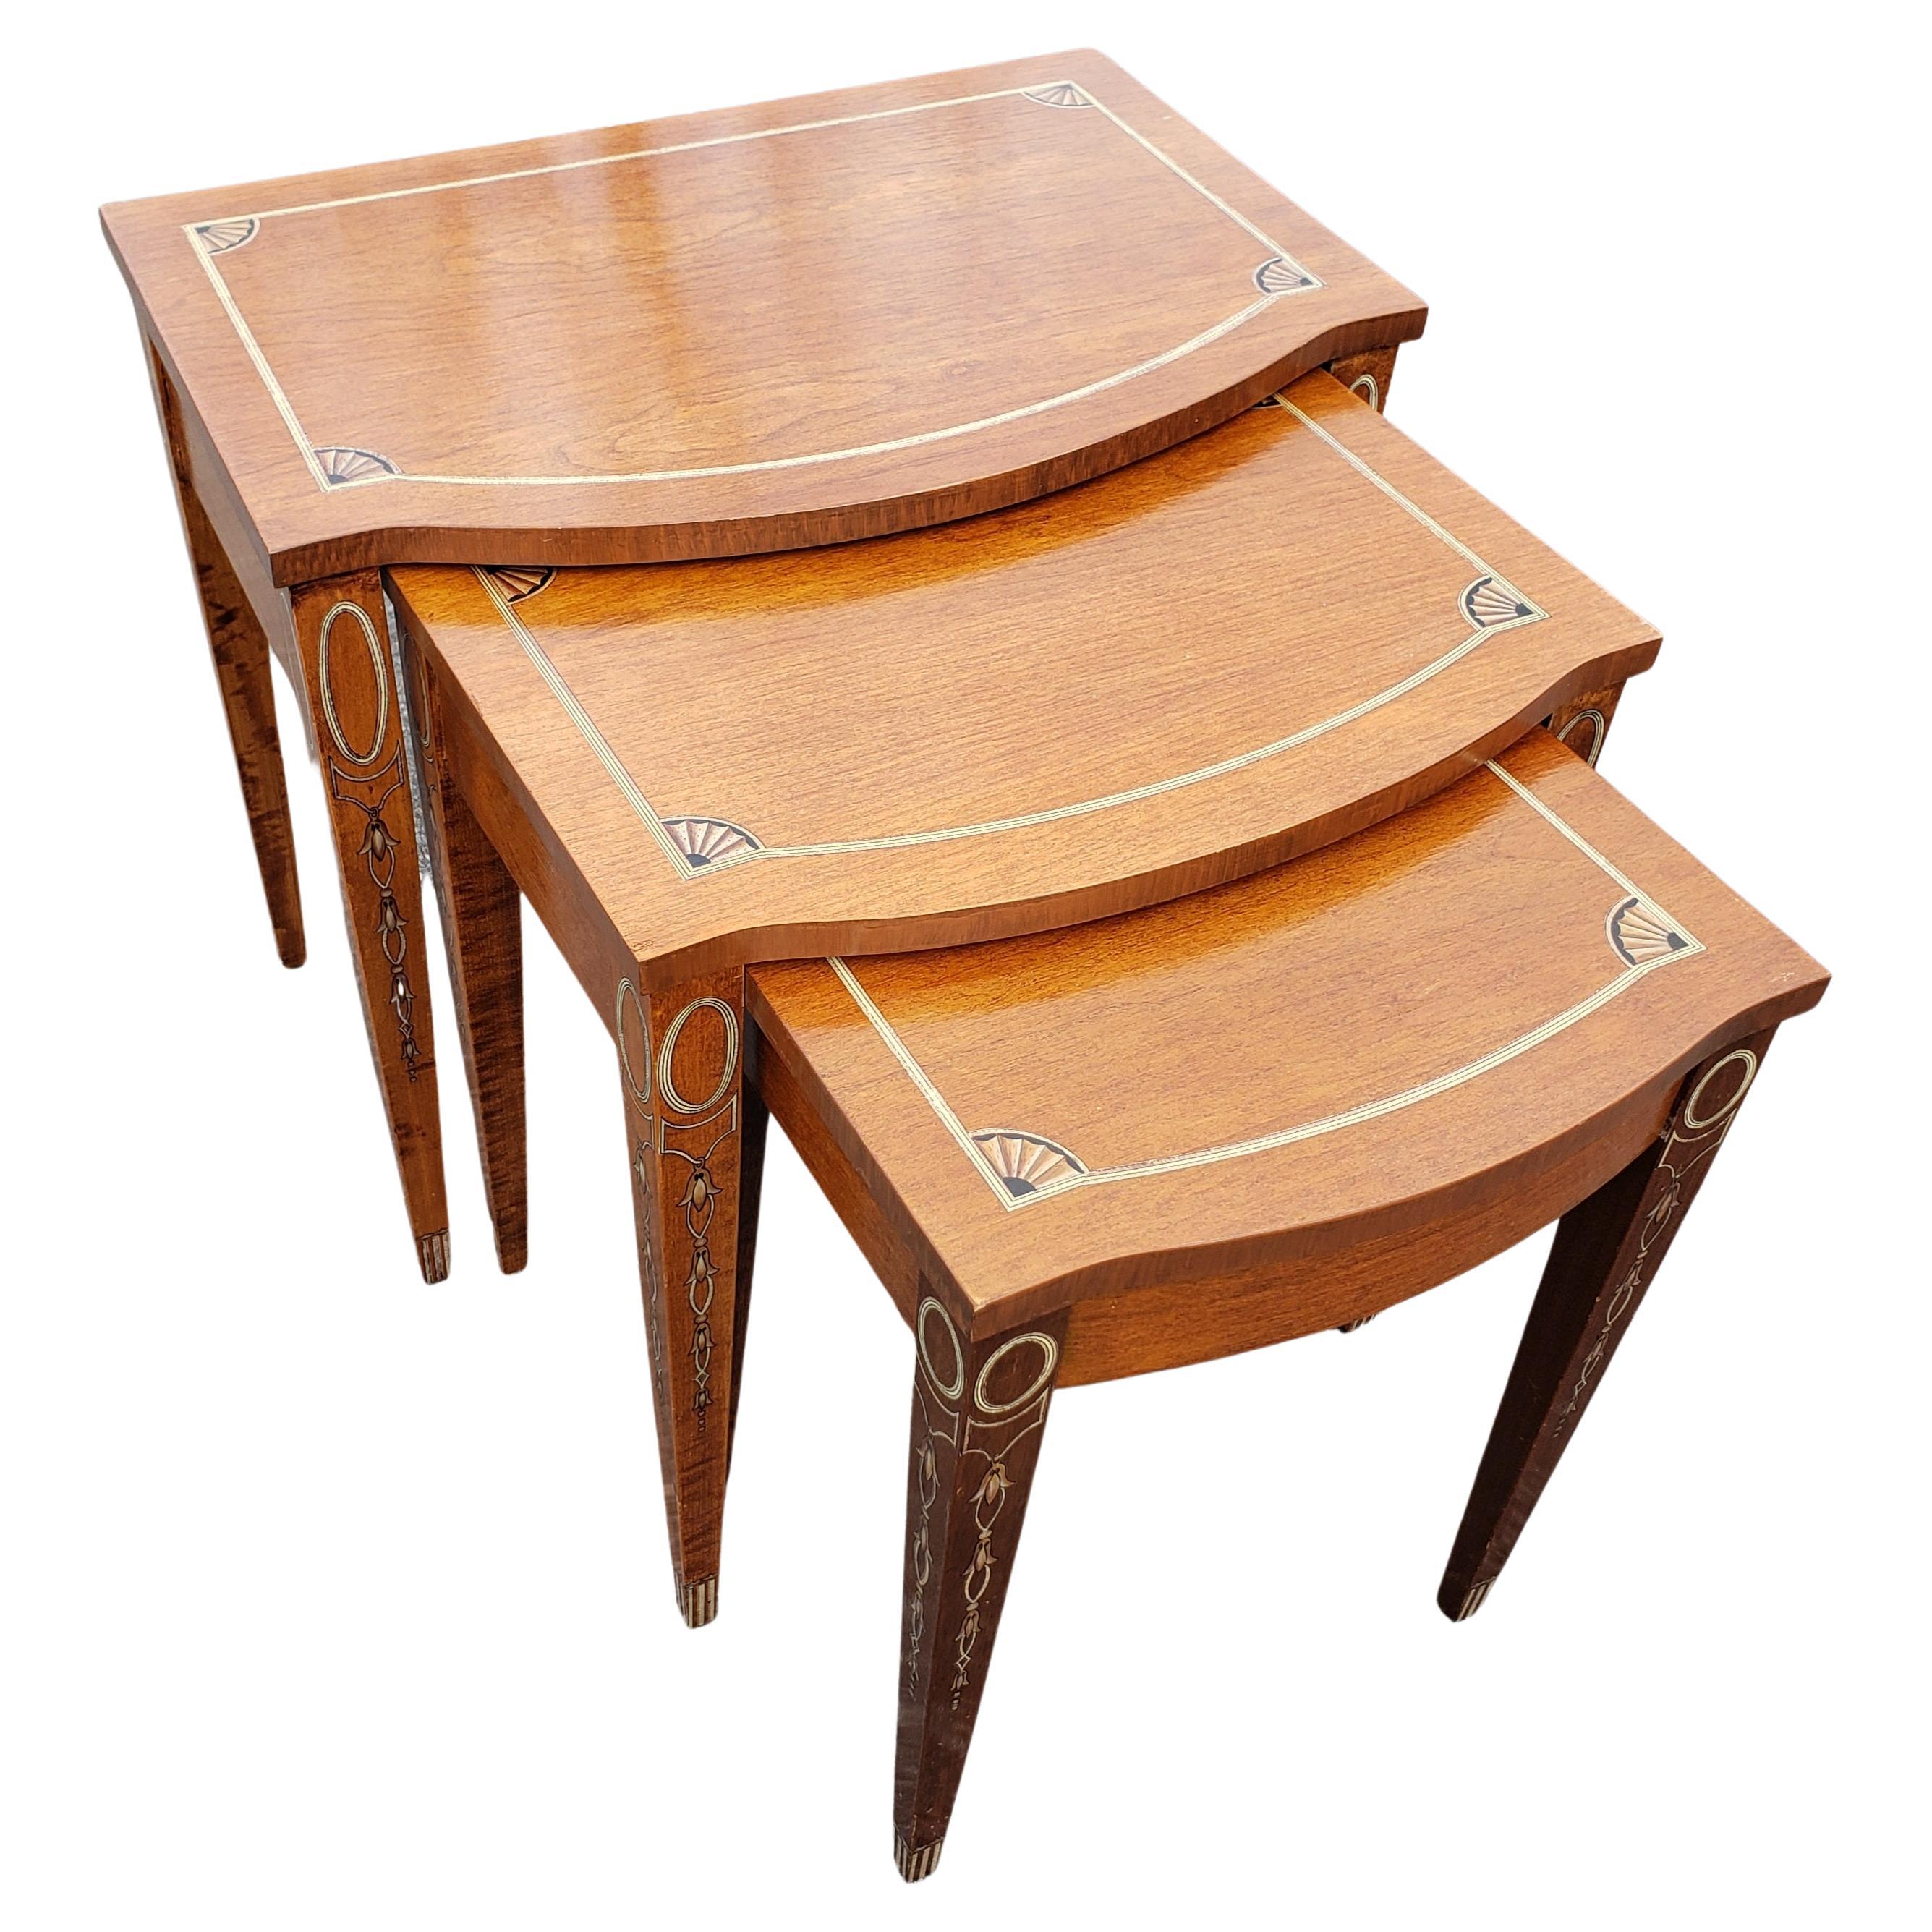 Superbe ensemble de trois tables gigognes en acajou marqueté de style George III en très bon état. La grande table mesure 22.5 